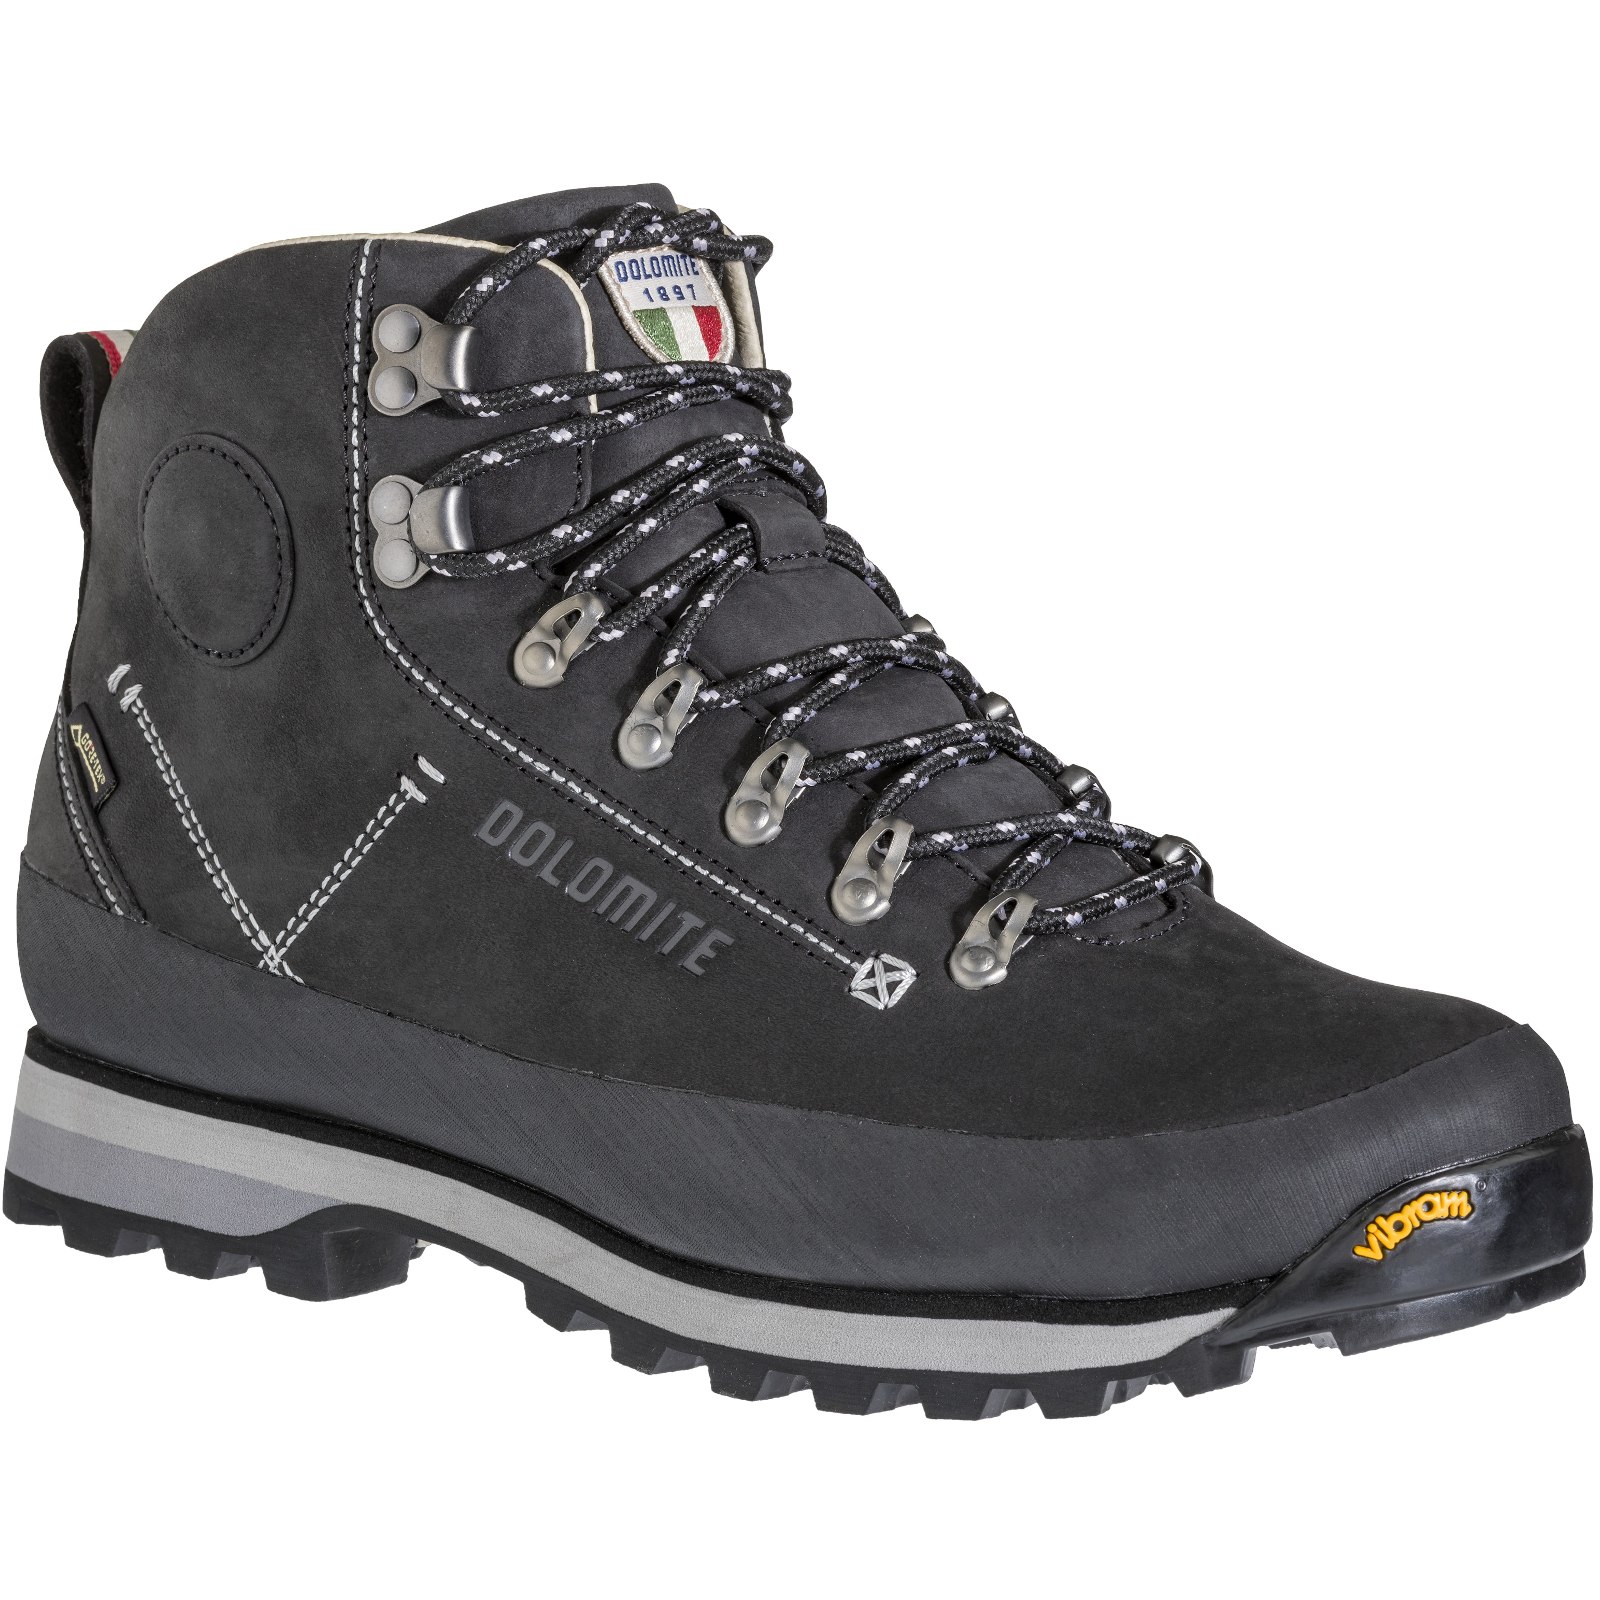 Productfoto van Dolomite 54 Trek GORE-TEX Schoenen Heren - zwart